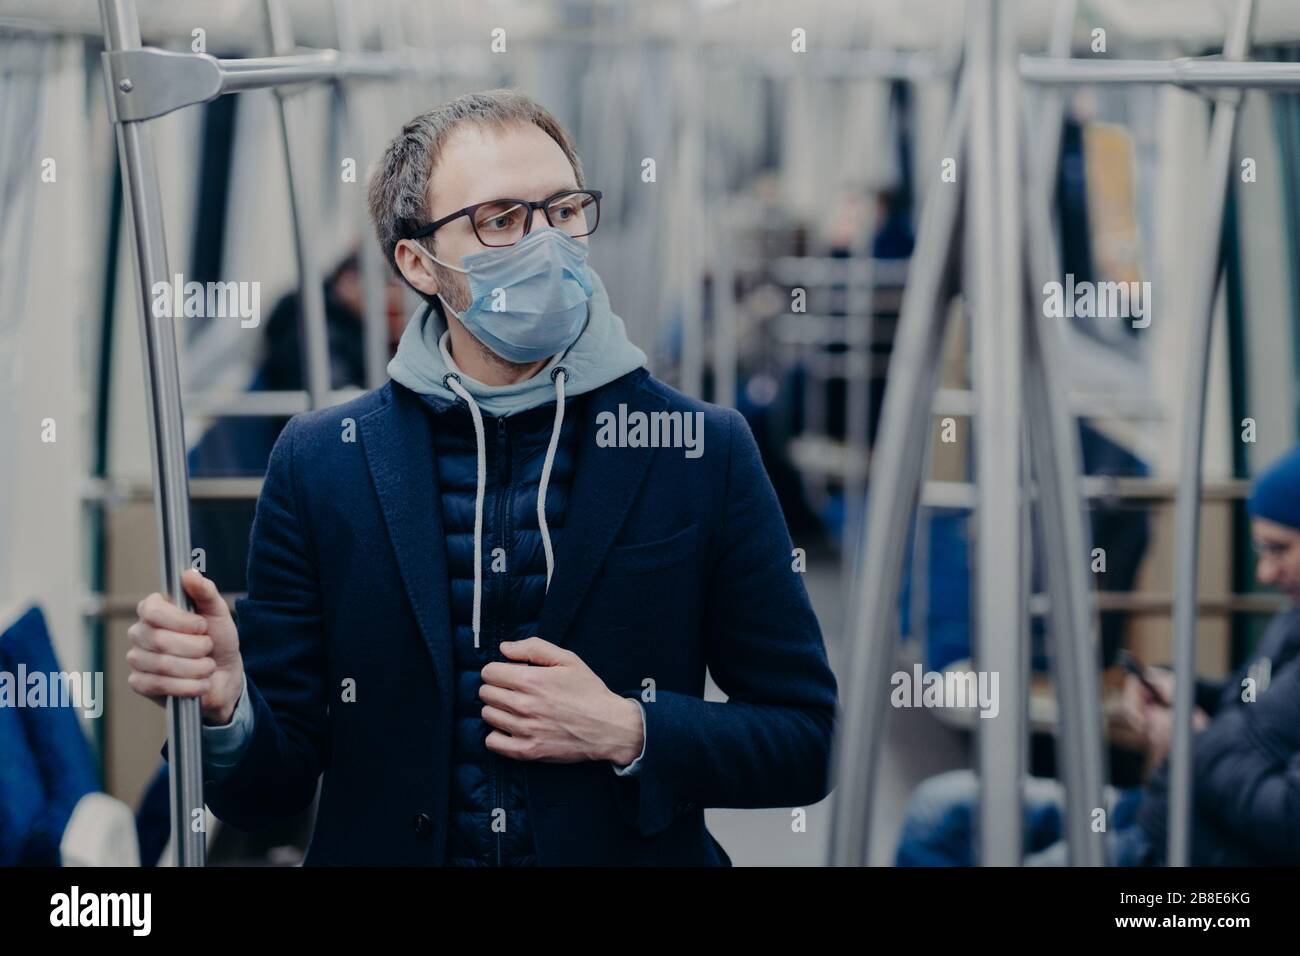 Le jeune homme pensif dans les lunettes porte un masque chirurgical protecteur pendant l'éclosion de coronavirus, pose dans les transports publics, pense comment surmonter les diseas Banque D'Images